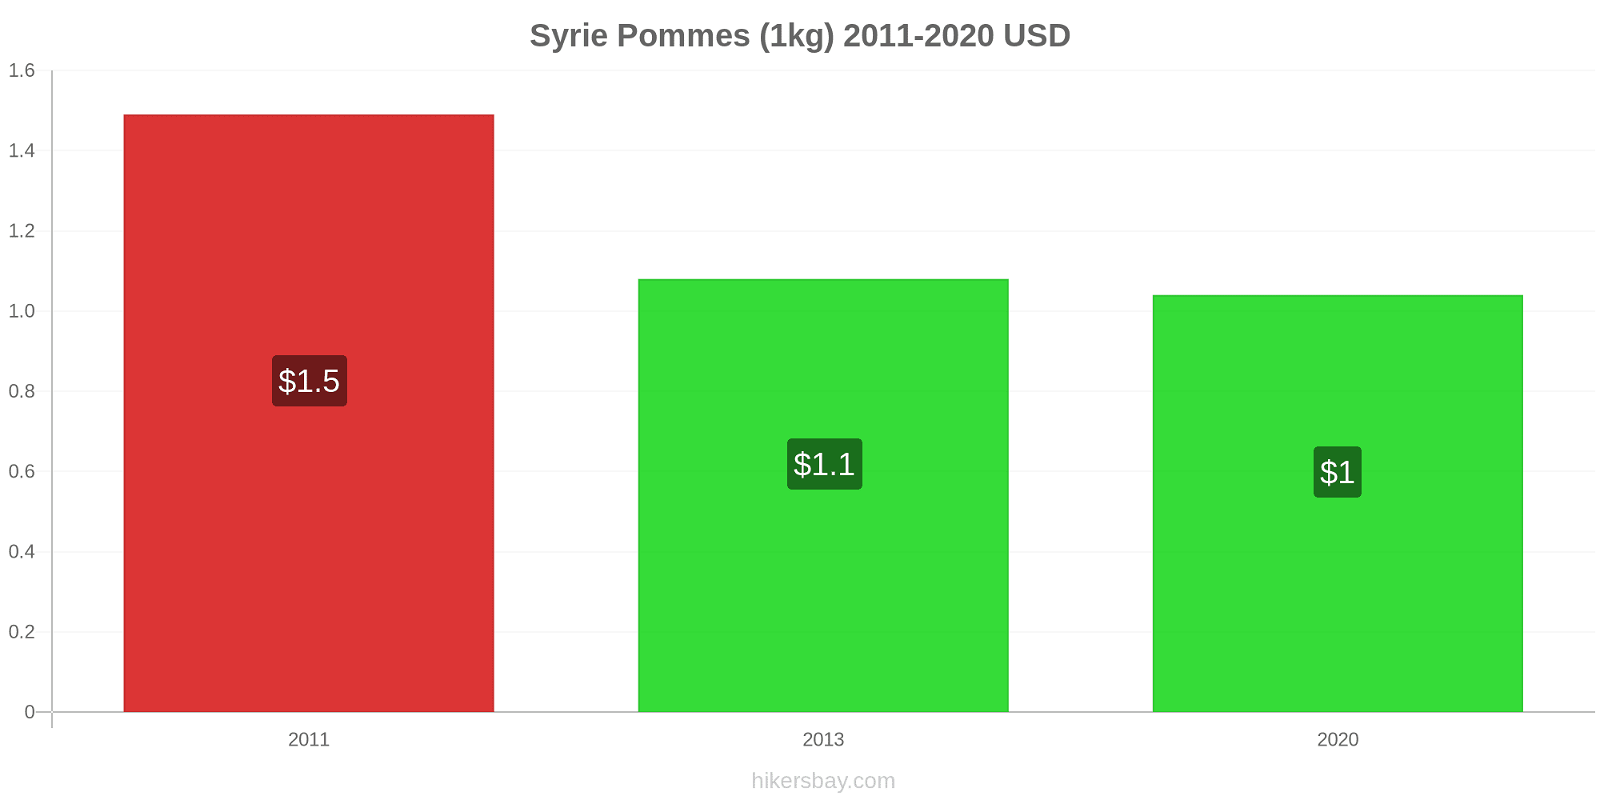 Syrie changements de prix Pommes (1kg) hikersbay.com